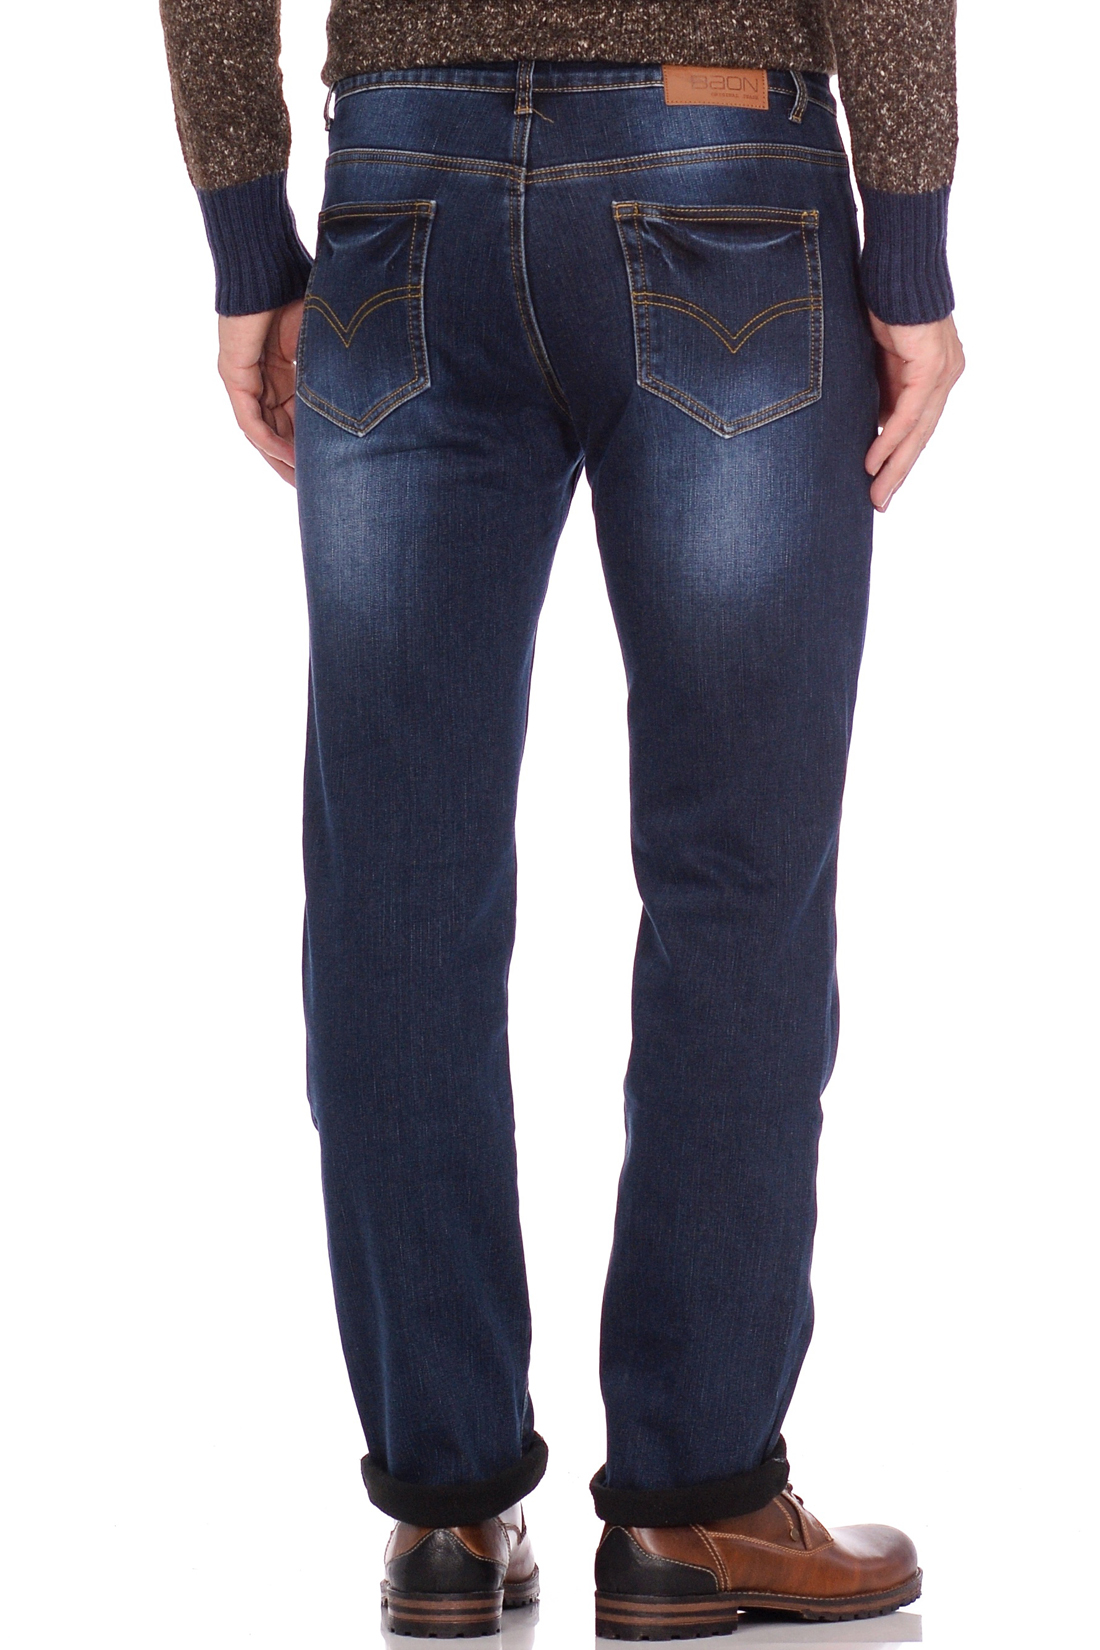 Утеплённые джинсы (арт. baon B808510), размер 42, цвет blue denim#голубой Утеплённые джинсы (арт. baon B808510) - фото 2